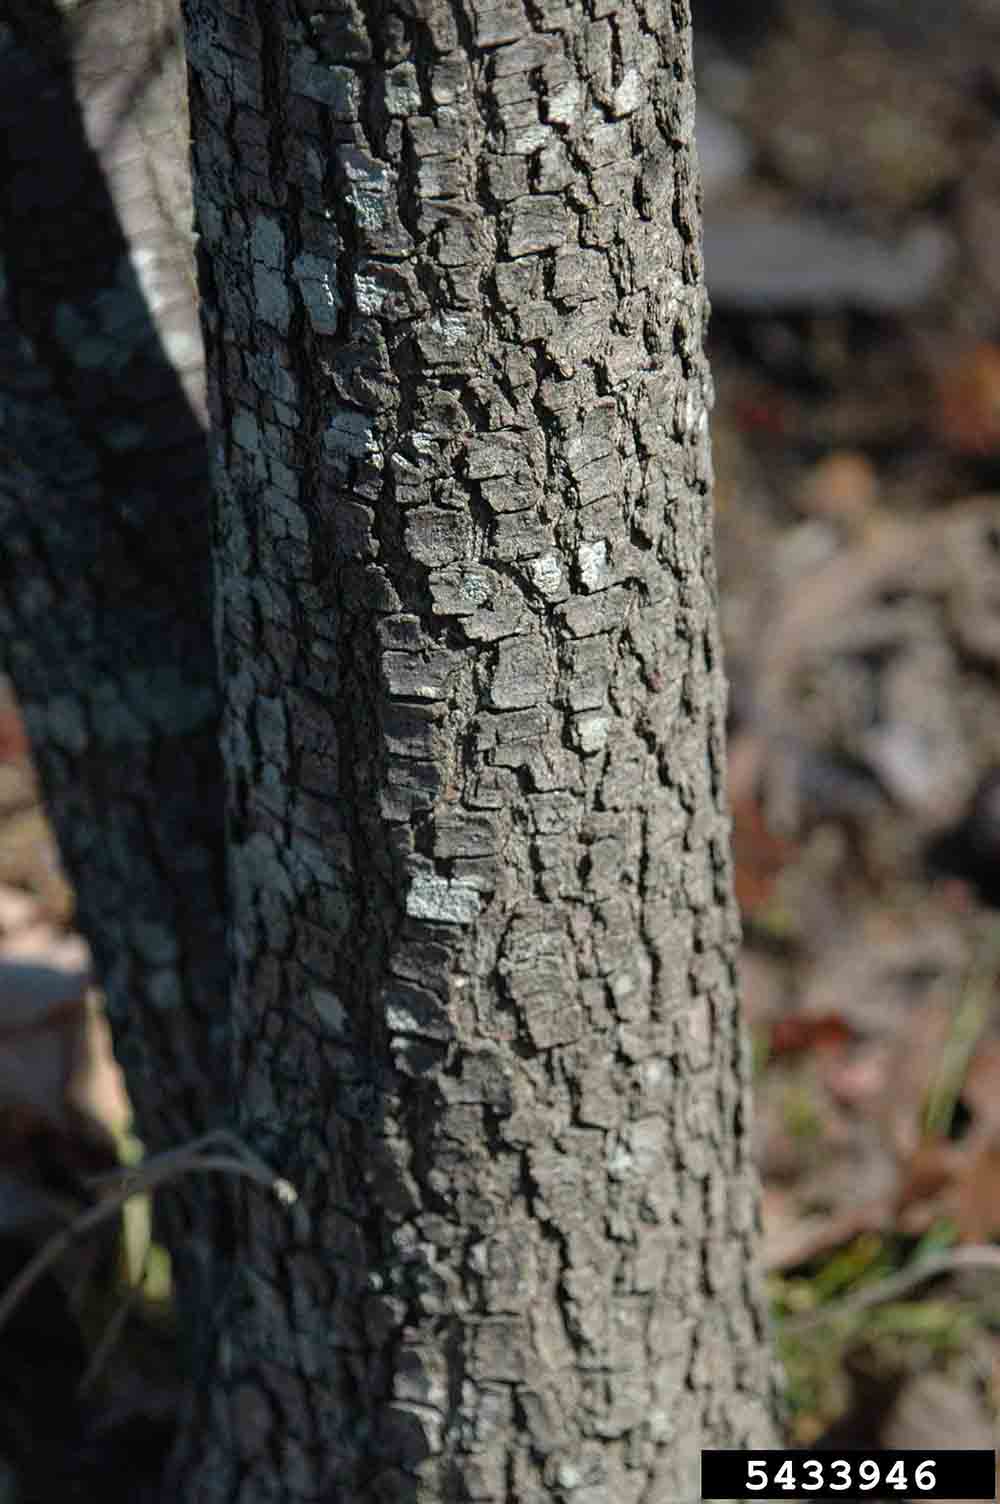 Flowering dogwood bark on trunk